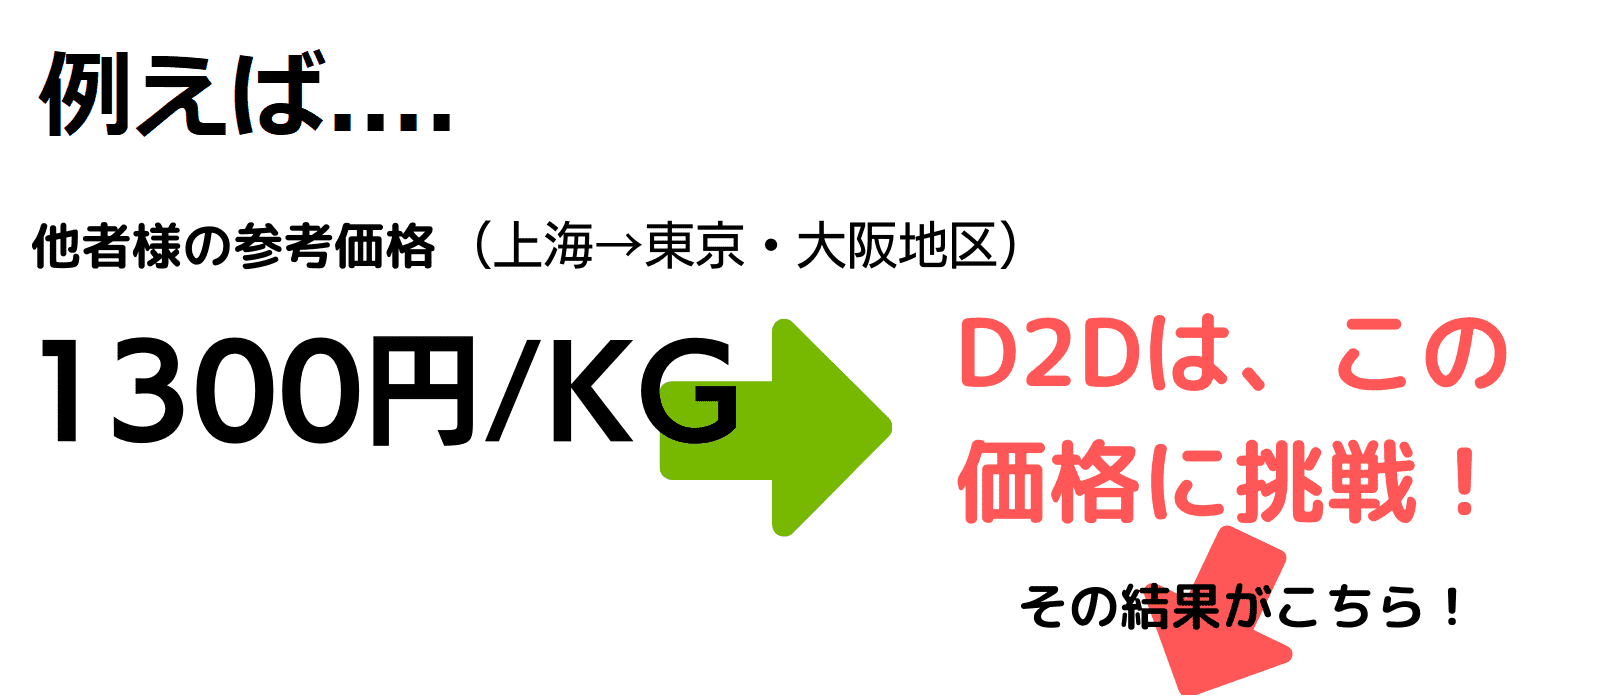 d2d